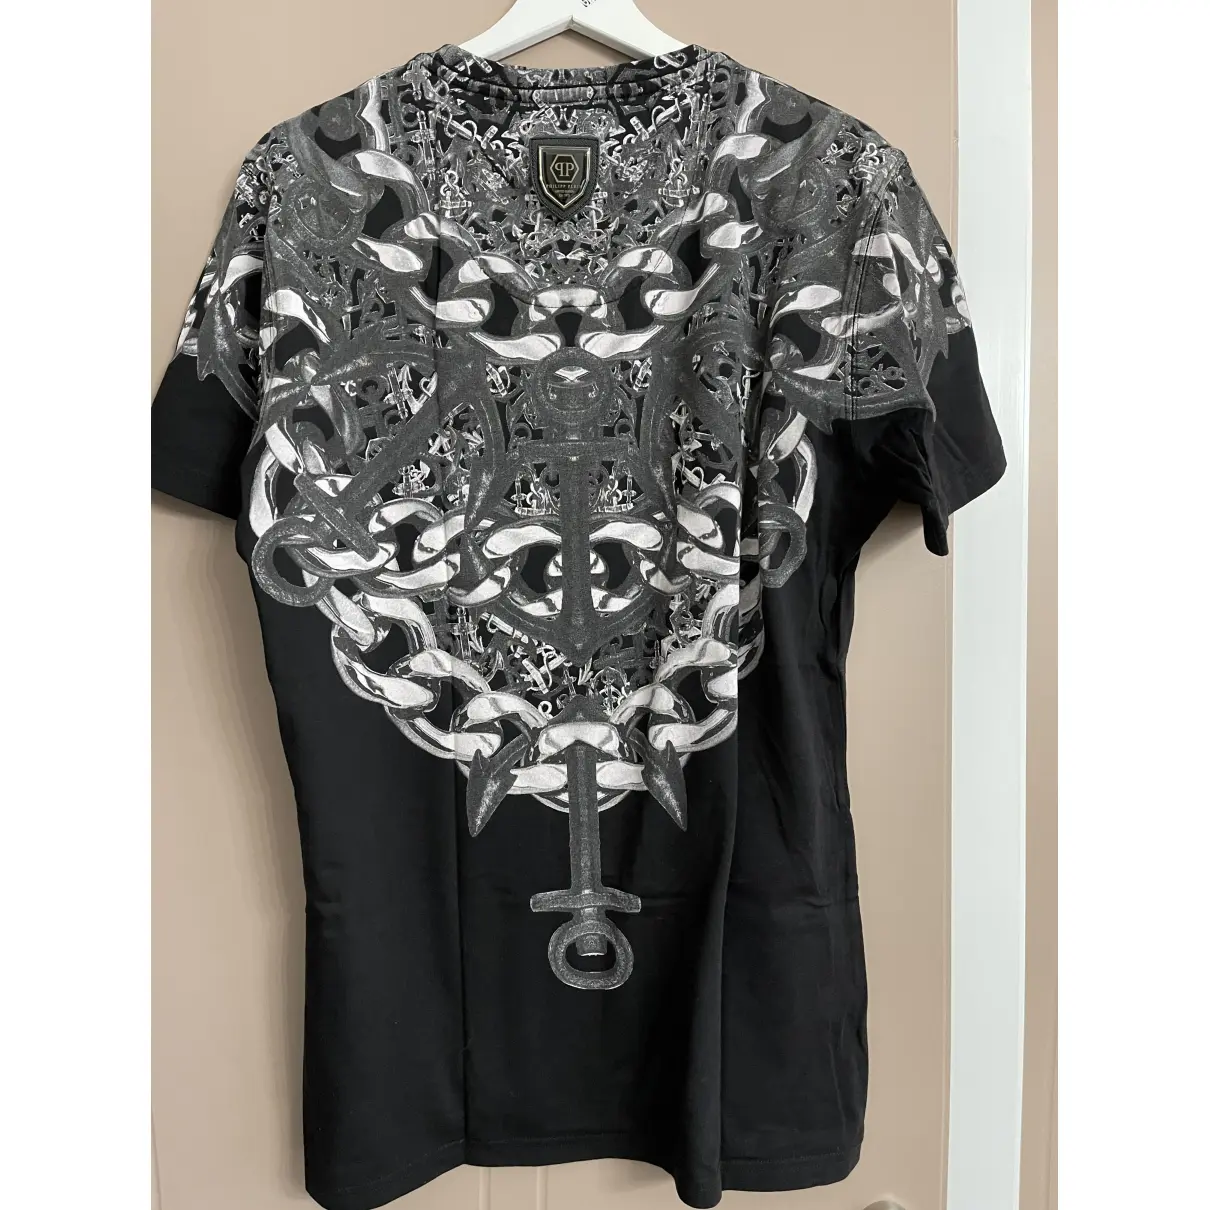 Buy Philipp Plein Black Cotton T-shirt online